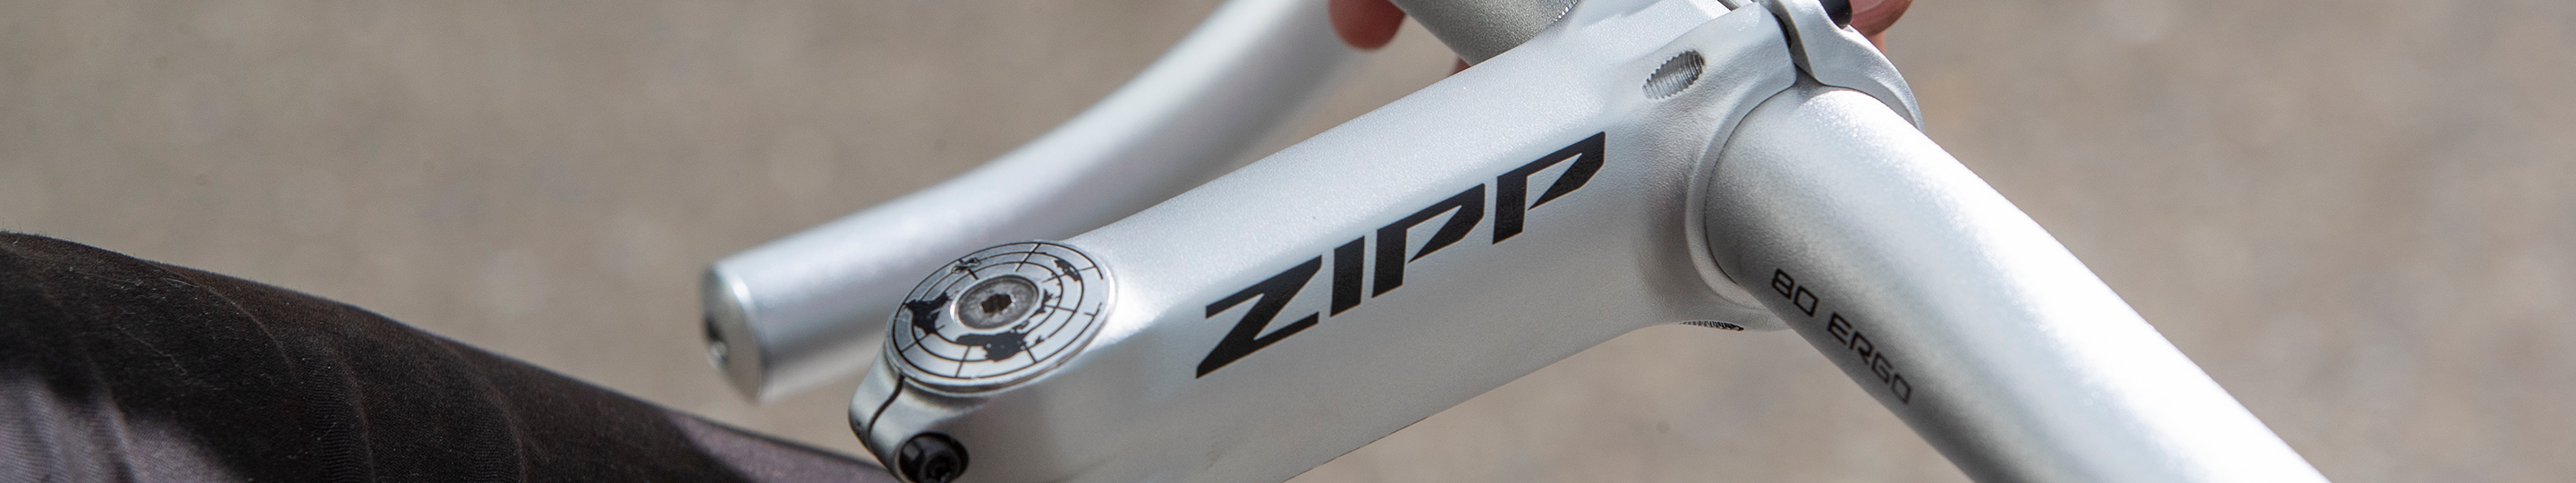 La gamme Zipp Service Course passe à l'argent en 2020